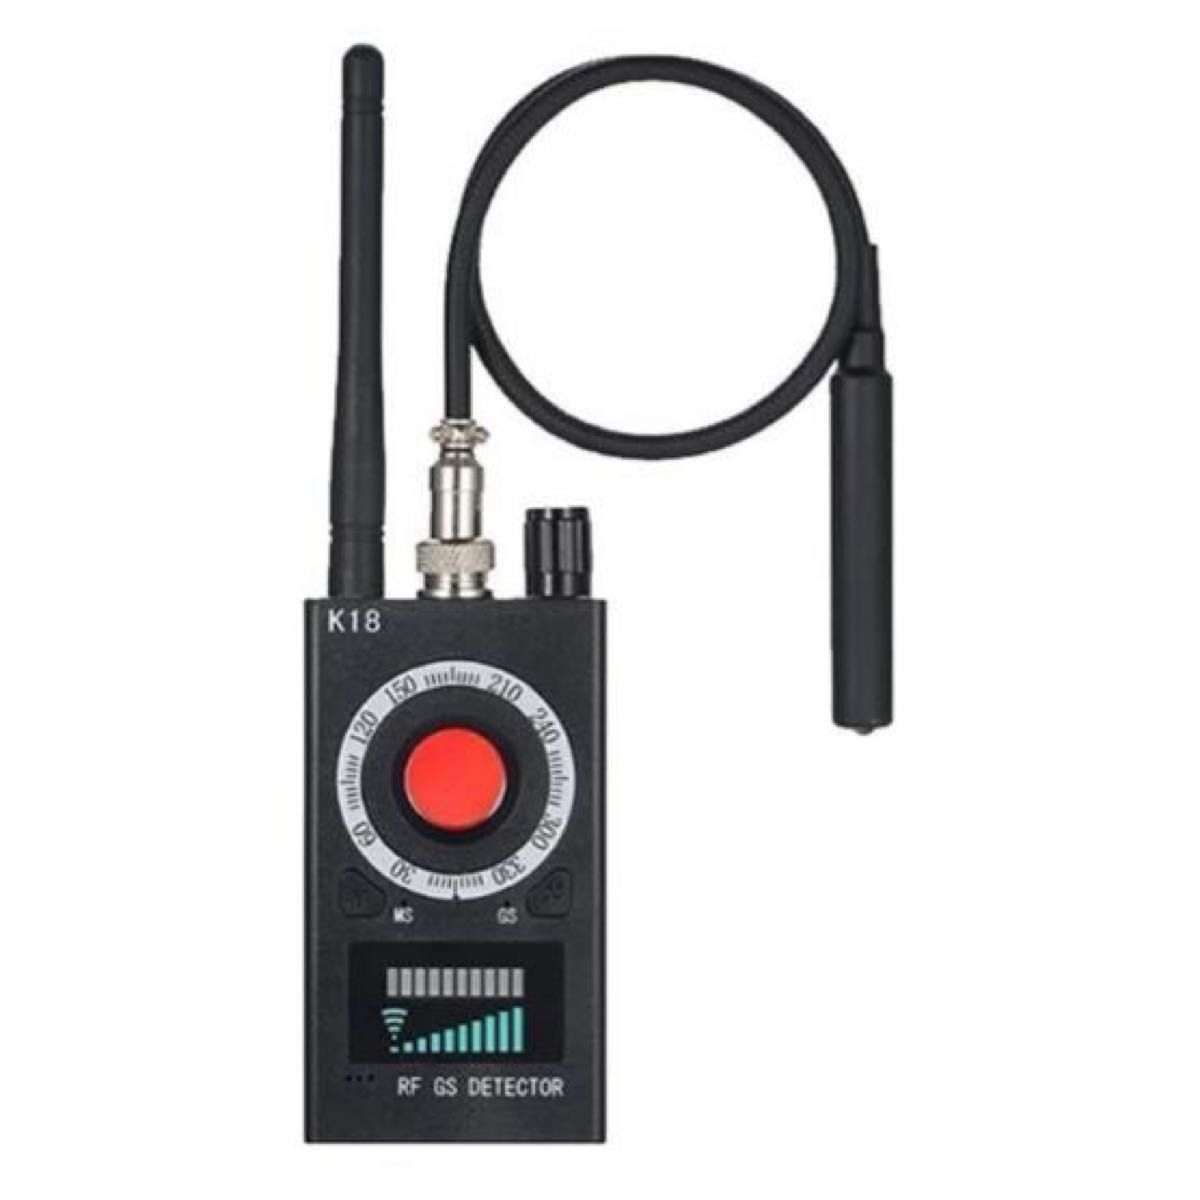 盗聴器発見機gps発見機は盗撮カメラ無線式盗聴器GPS発信機などを正確に検知できます。無音10段階感度調整高性能業務用レベル高感度